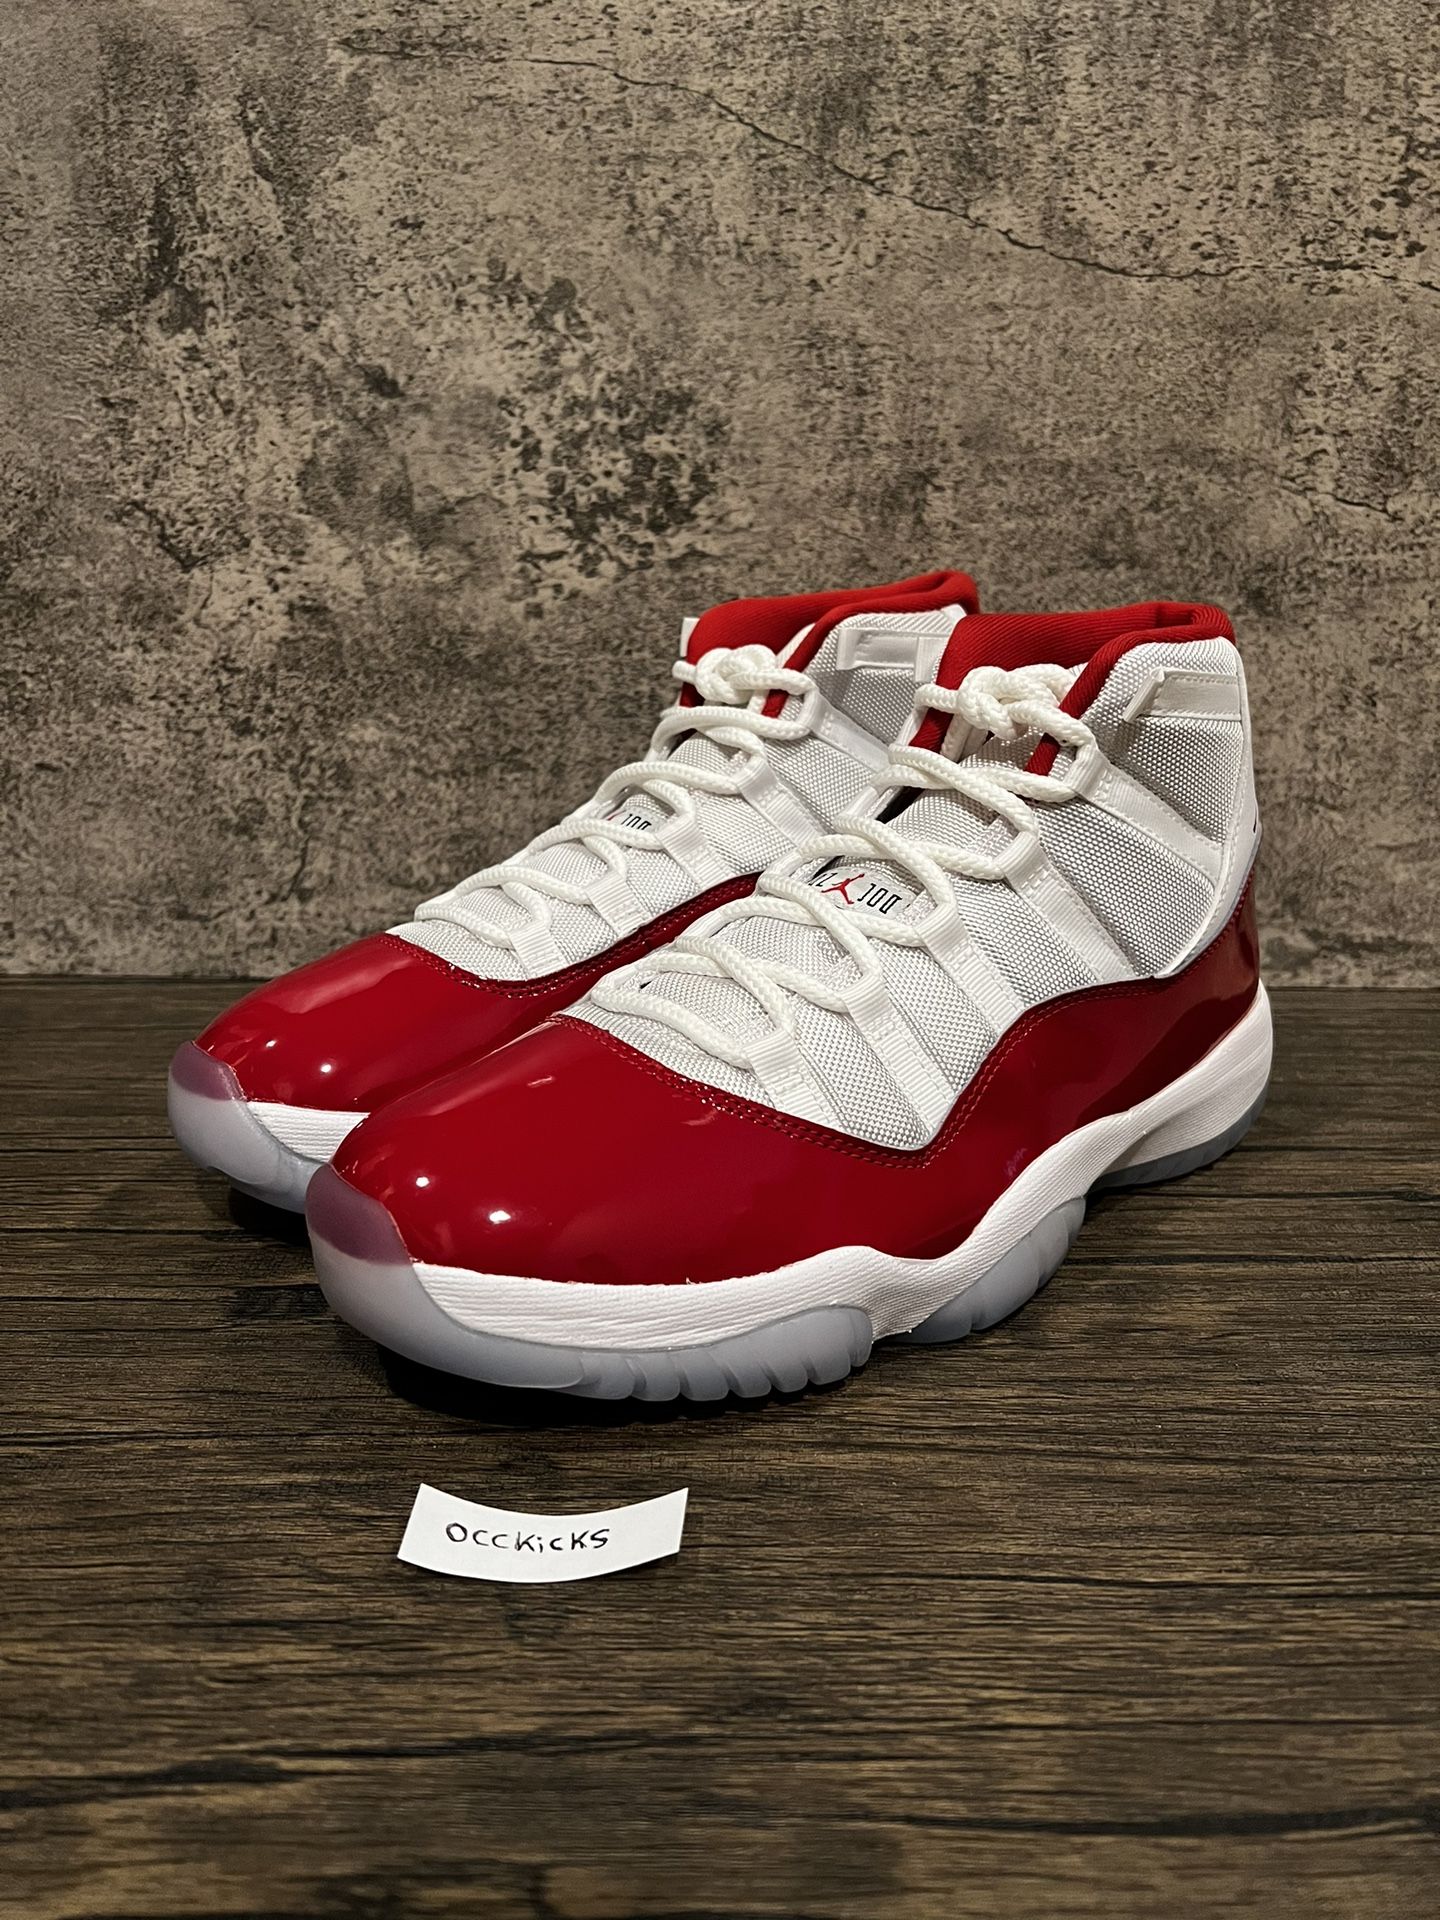 Jordan 11 Retro Cherry Size 11 Nike Air 2022 White Red 